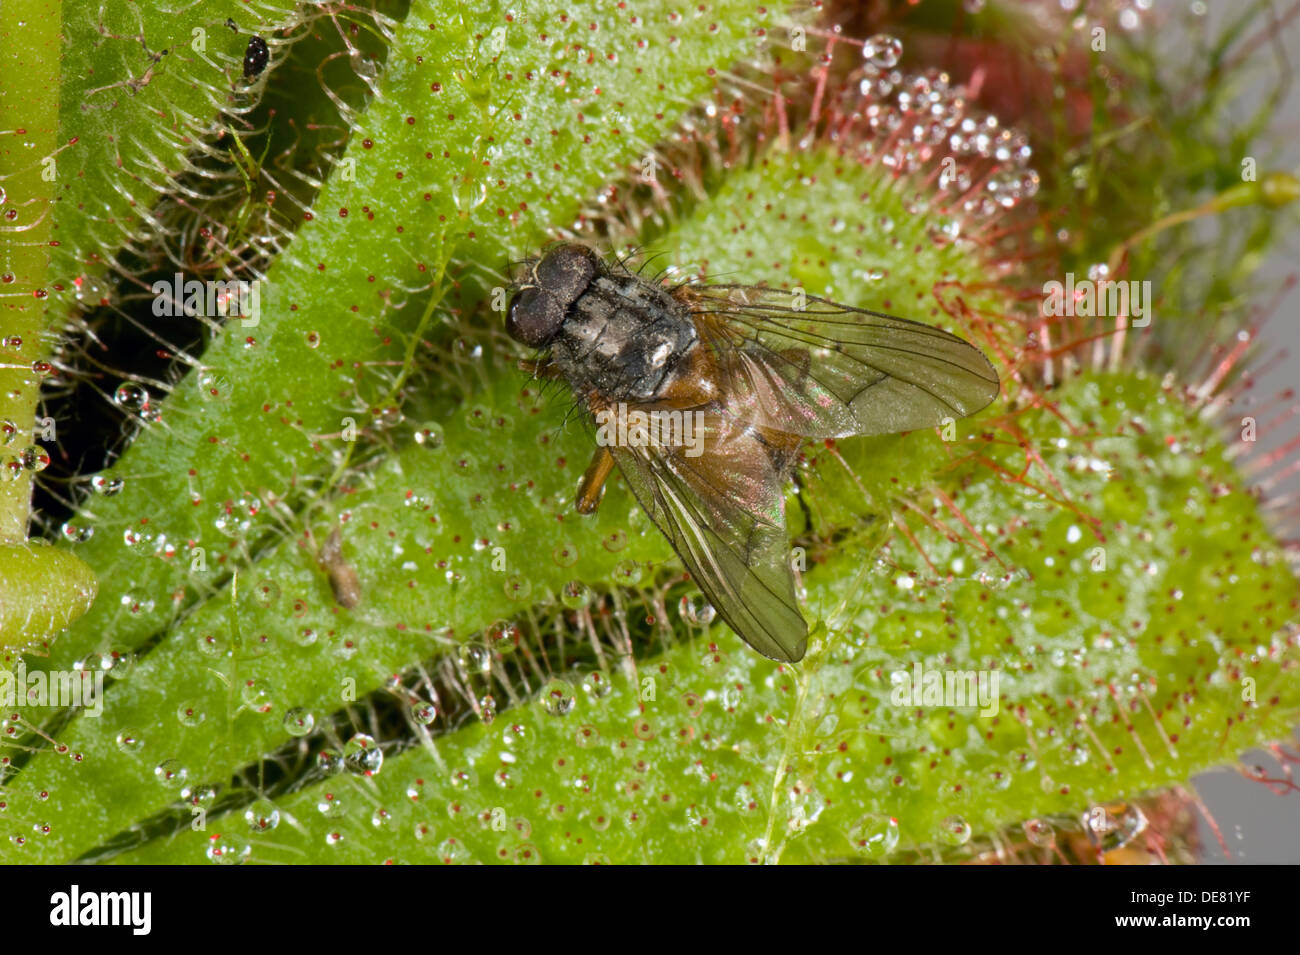 Une mouche pris sur les poils collants d'un sundew Drosera aliciae,, une plante carnivores des tourbières et marais Banque D'Images